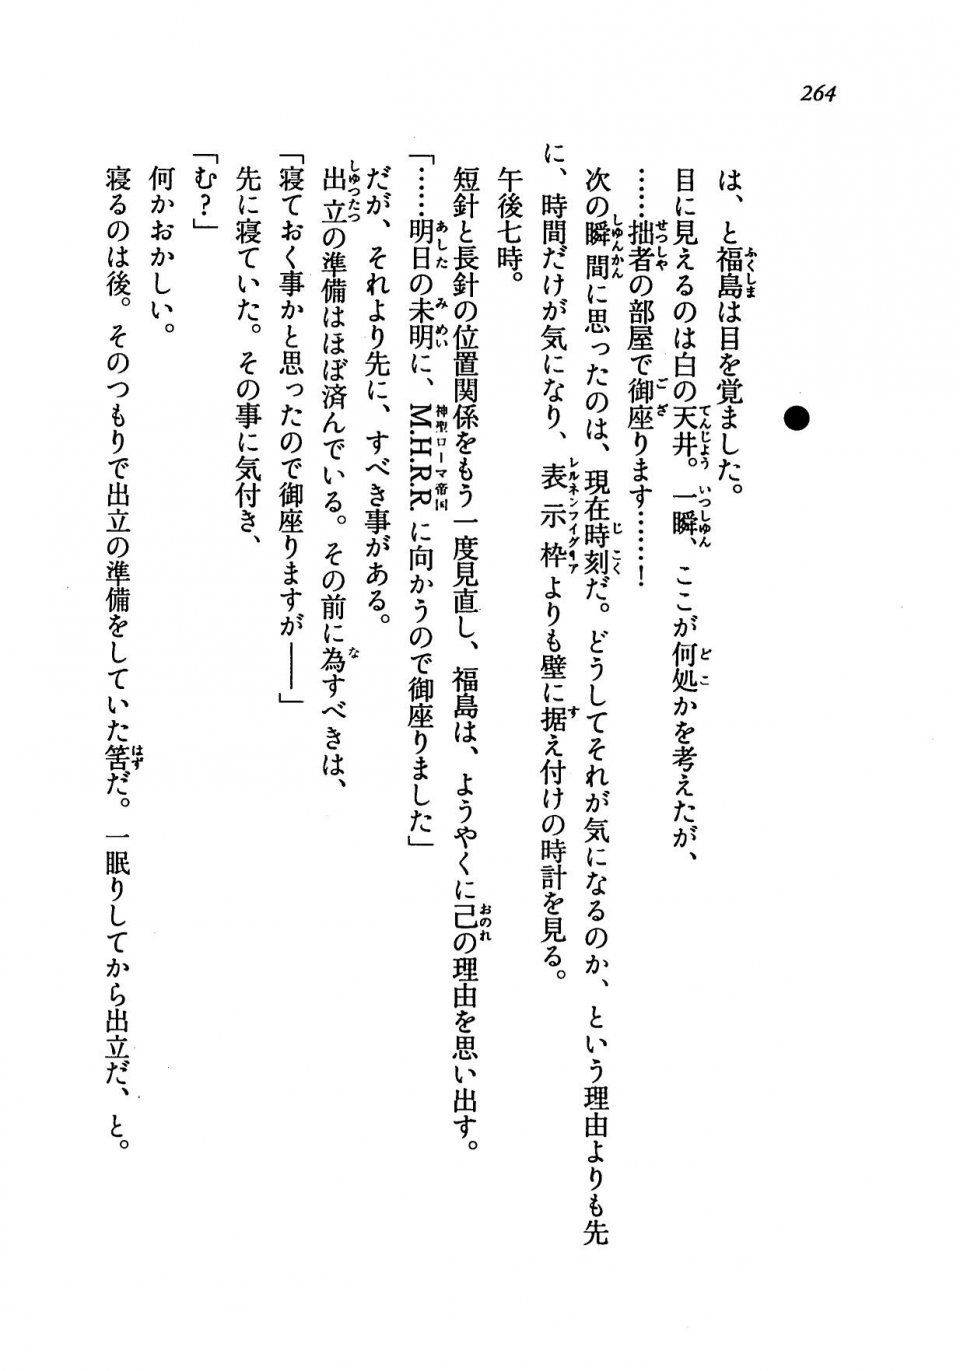 Kyoukai Senjou no Horizon LN Vol 19(8A) - Photo #264